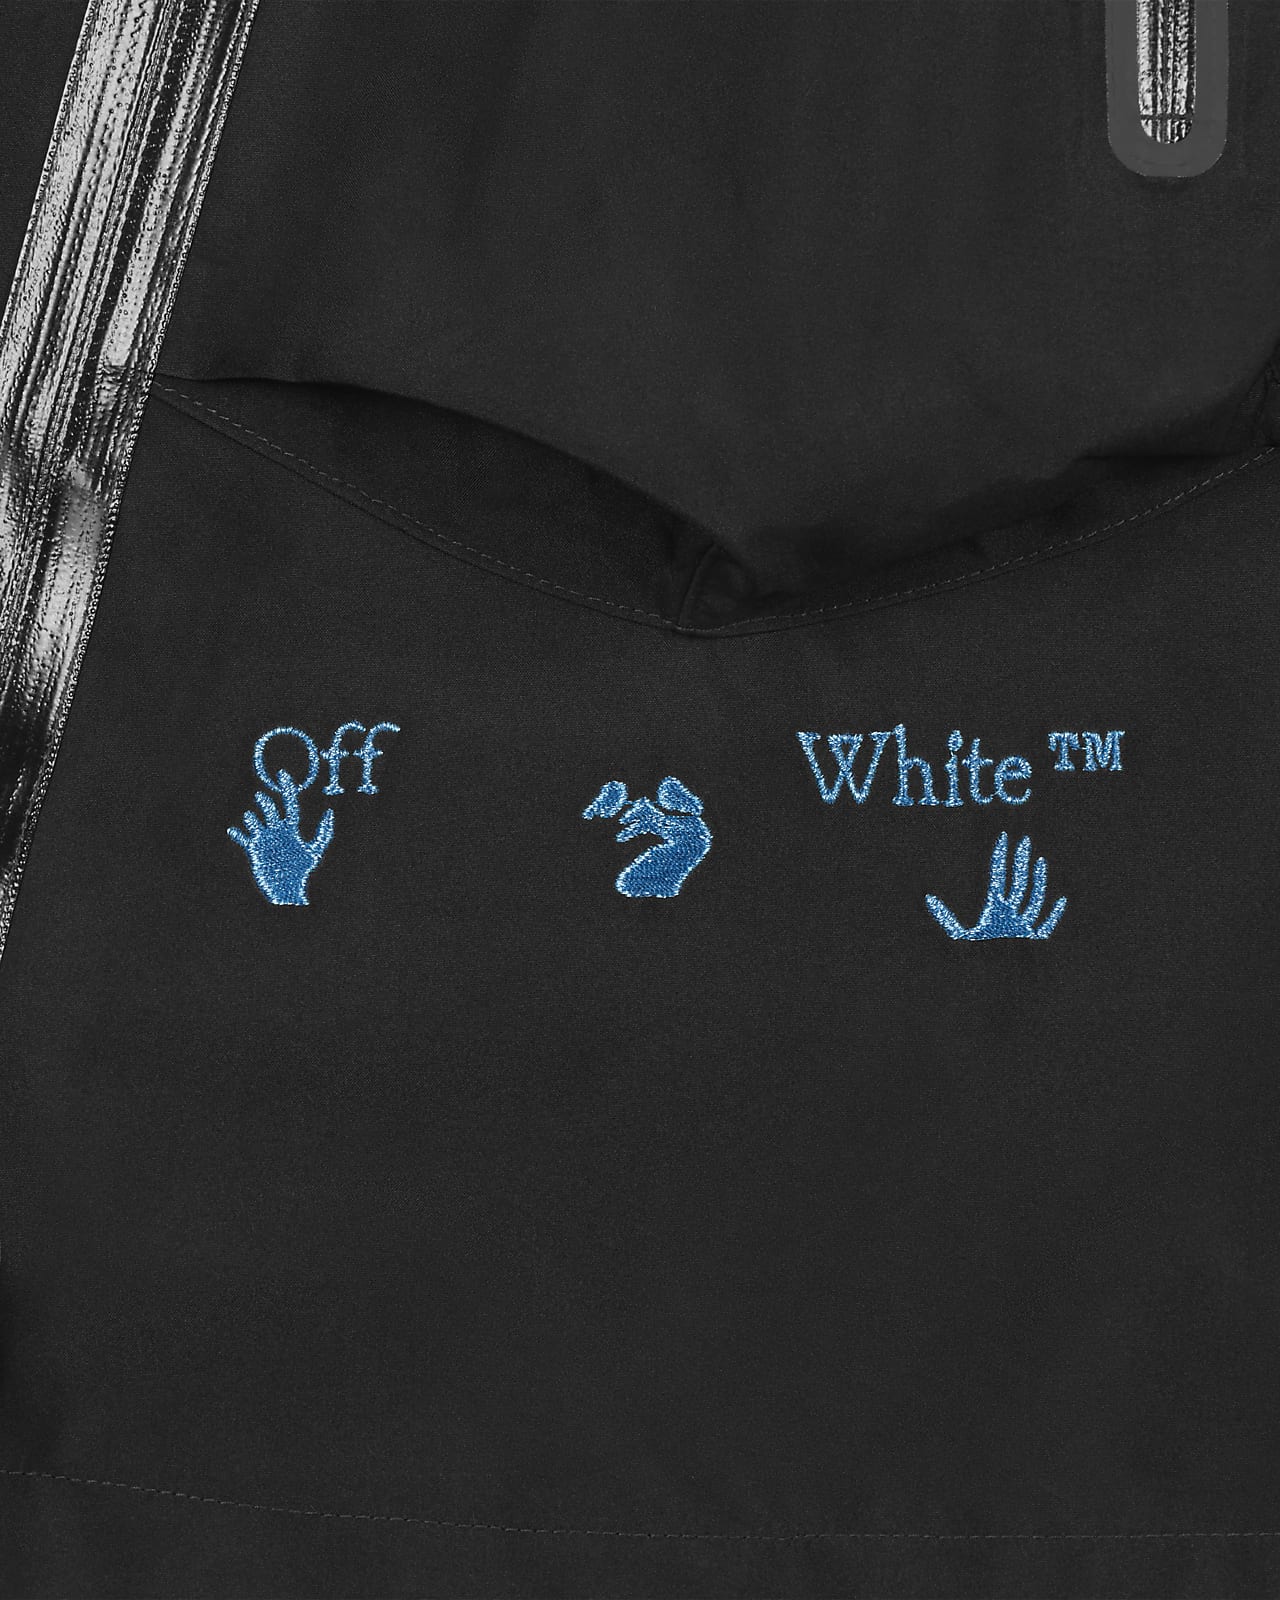 ナイキ x オフホワイト™ メンズジャケット